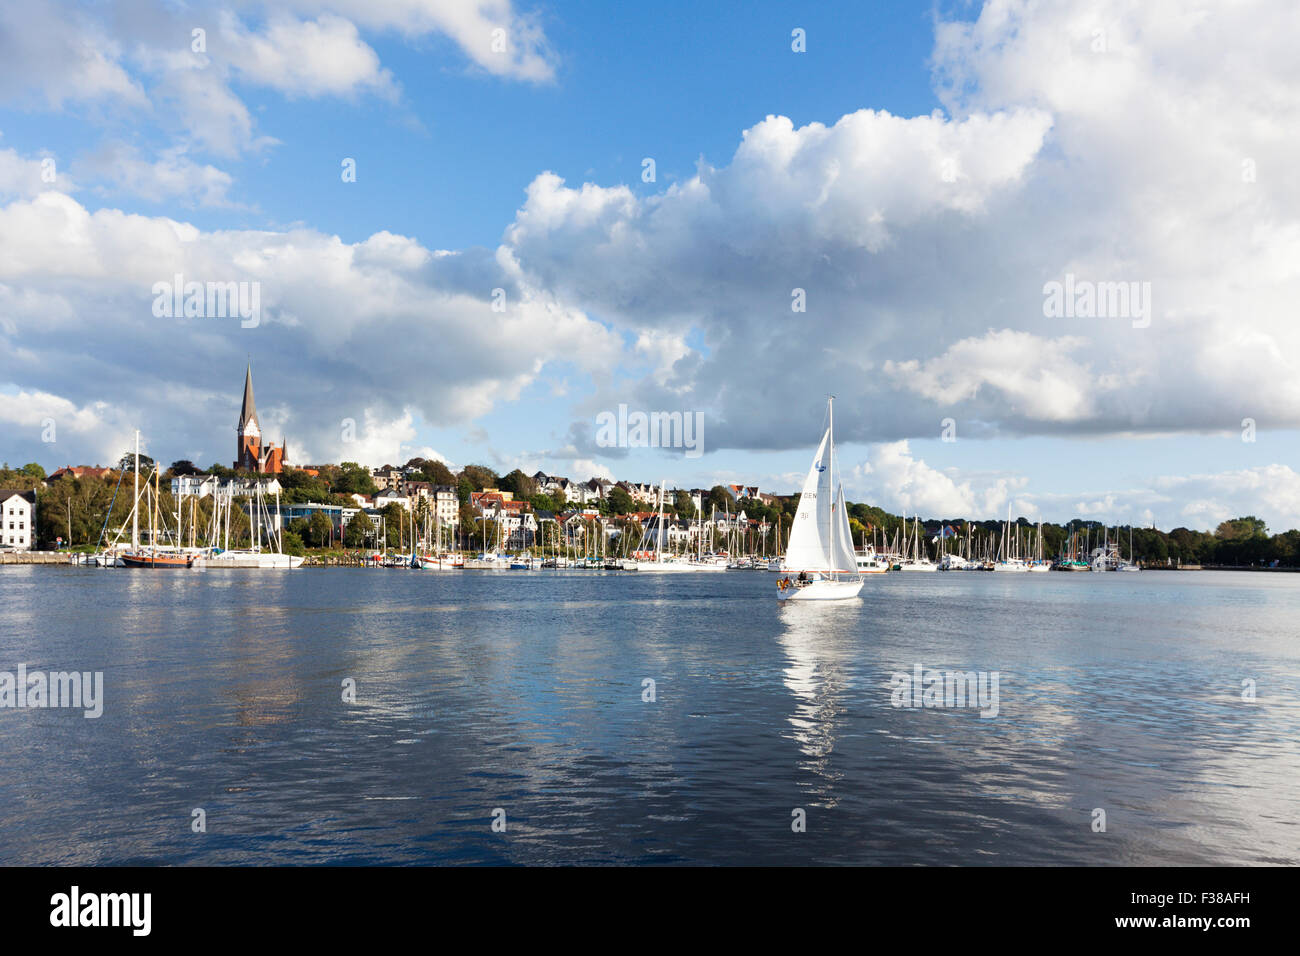 Marina und Fruerlund Viertel am östlichen Ufer des Flensburg, Segelboot im Vordergrund Stockfoto